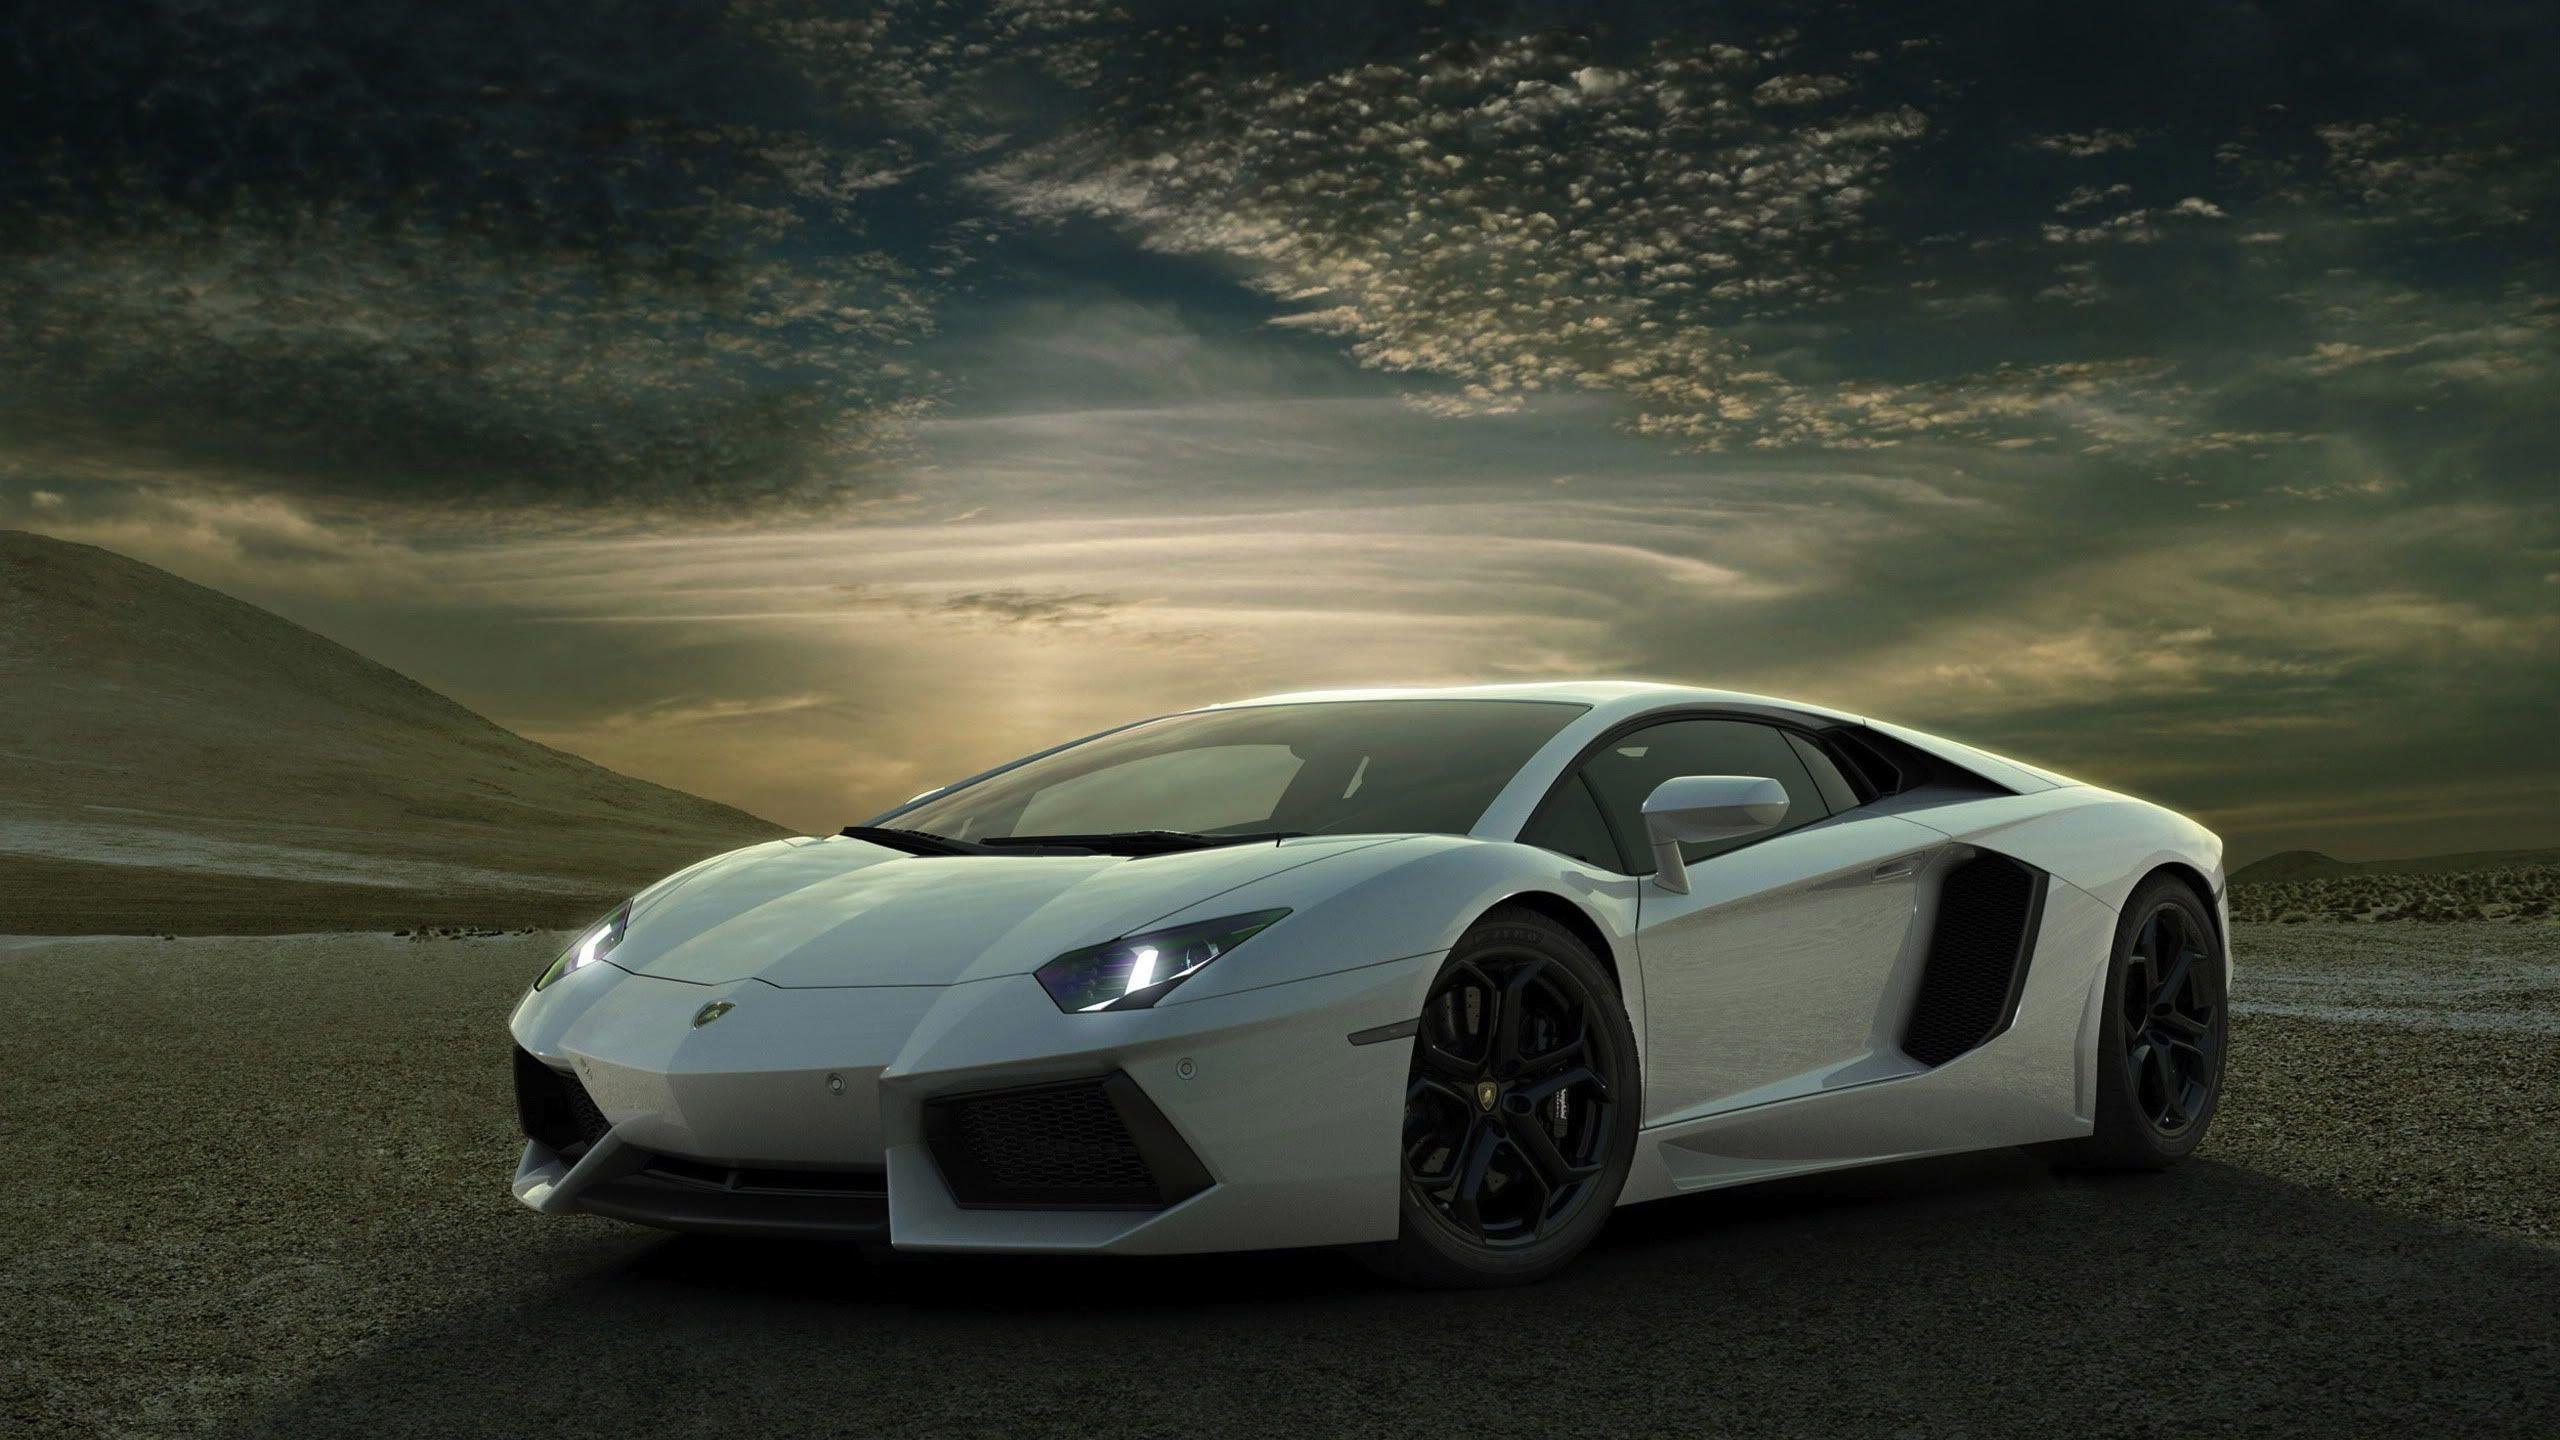 Hình nền Lamborghini nền trắng 2560x1440